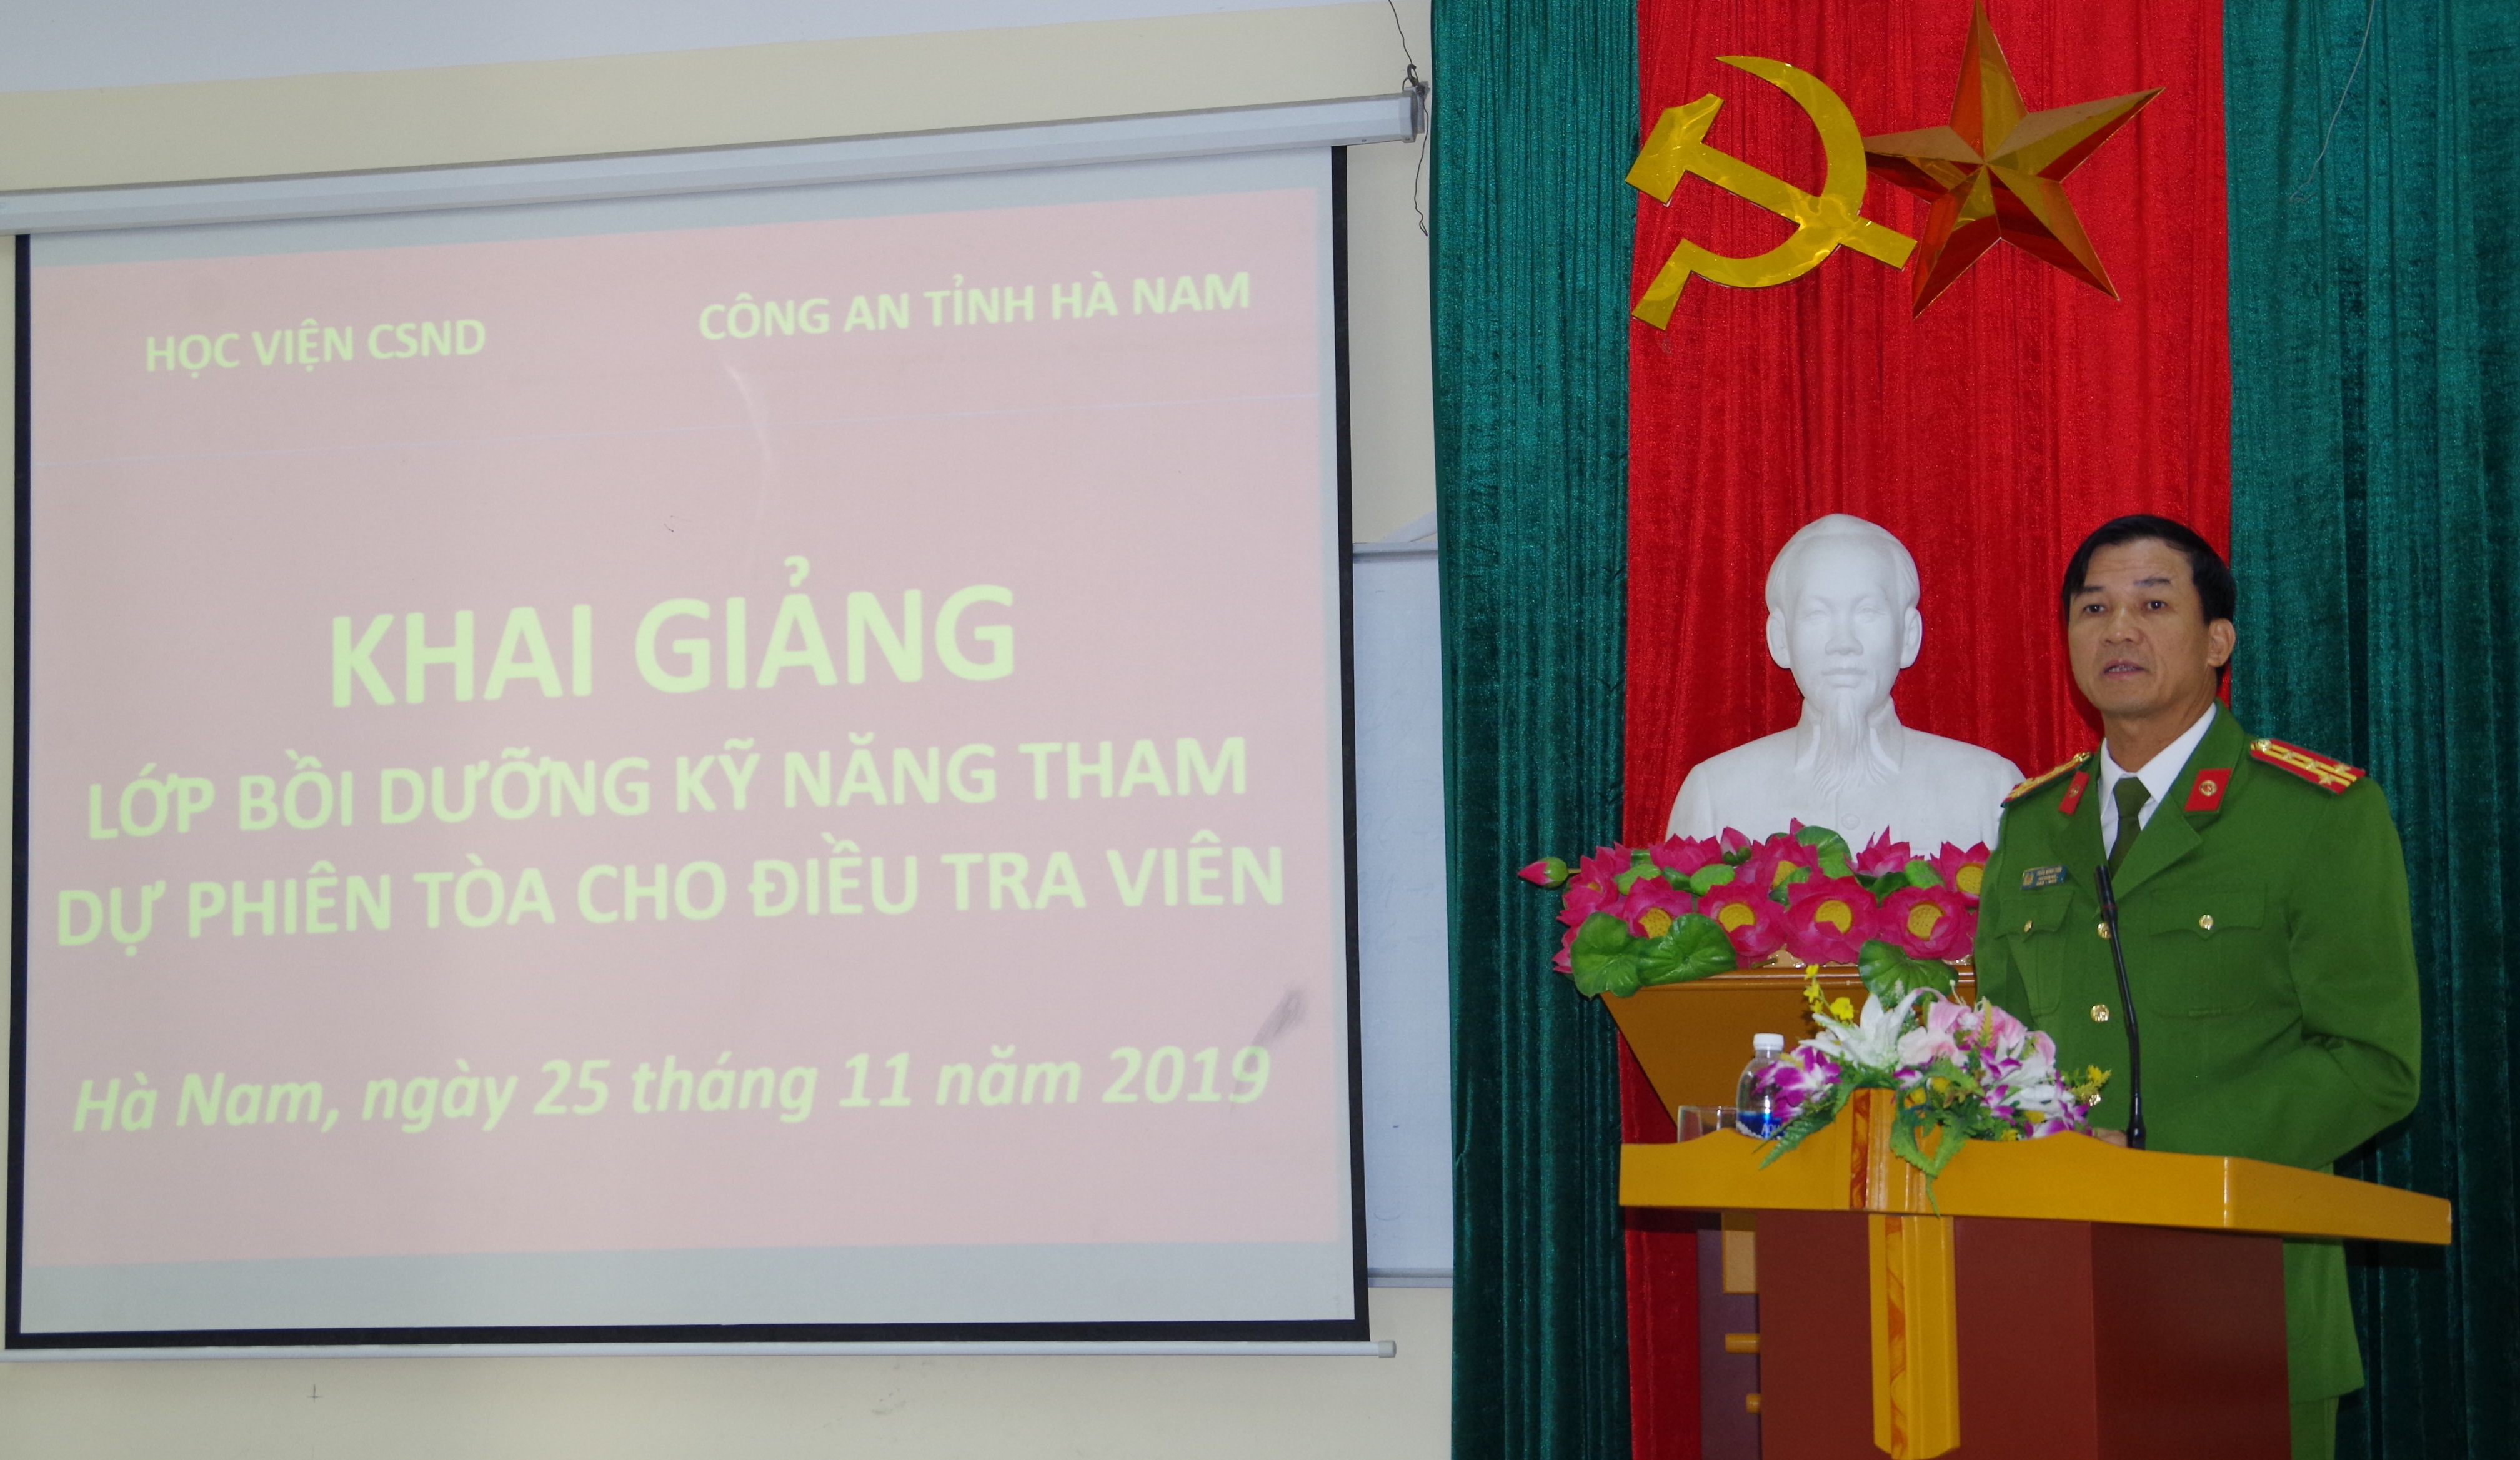 Đại tá Trần Minh Tiến, Phó Giám đốc Công an tỉnh Hà Nam phát biểu tại lễ khai giảng